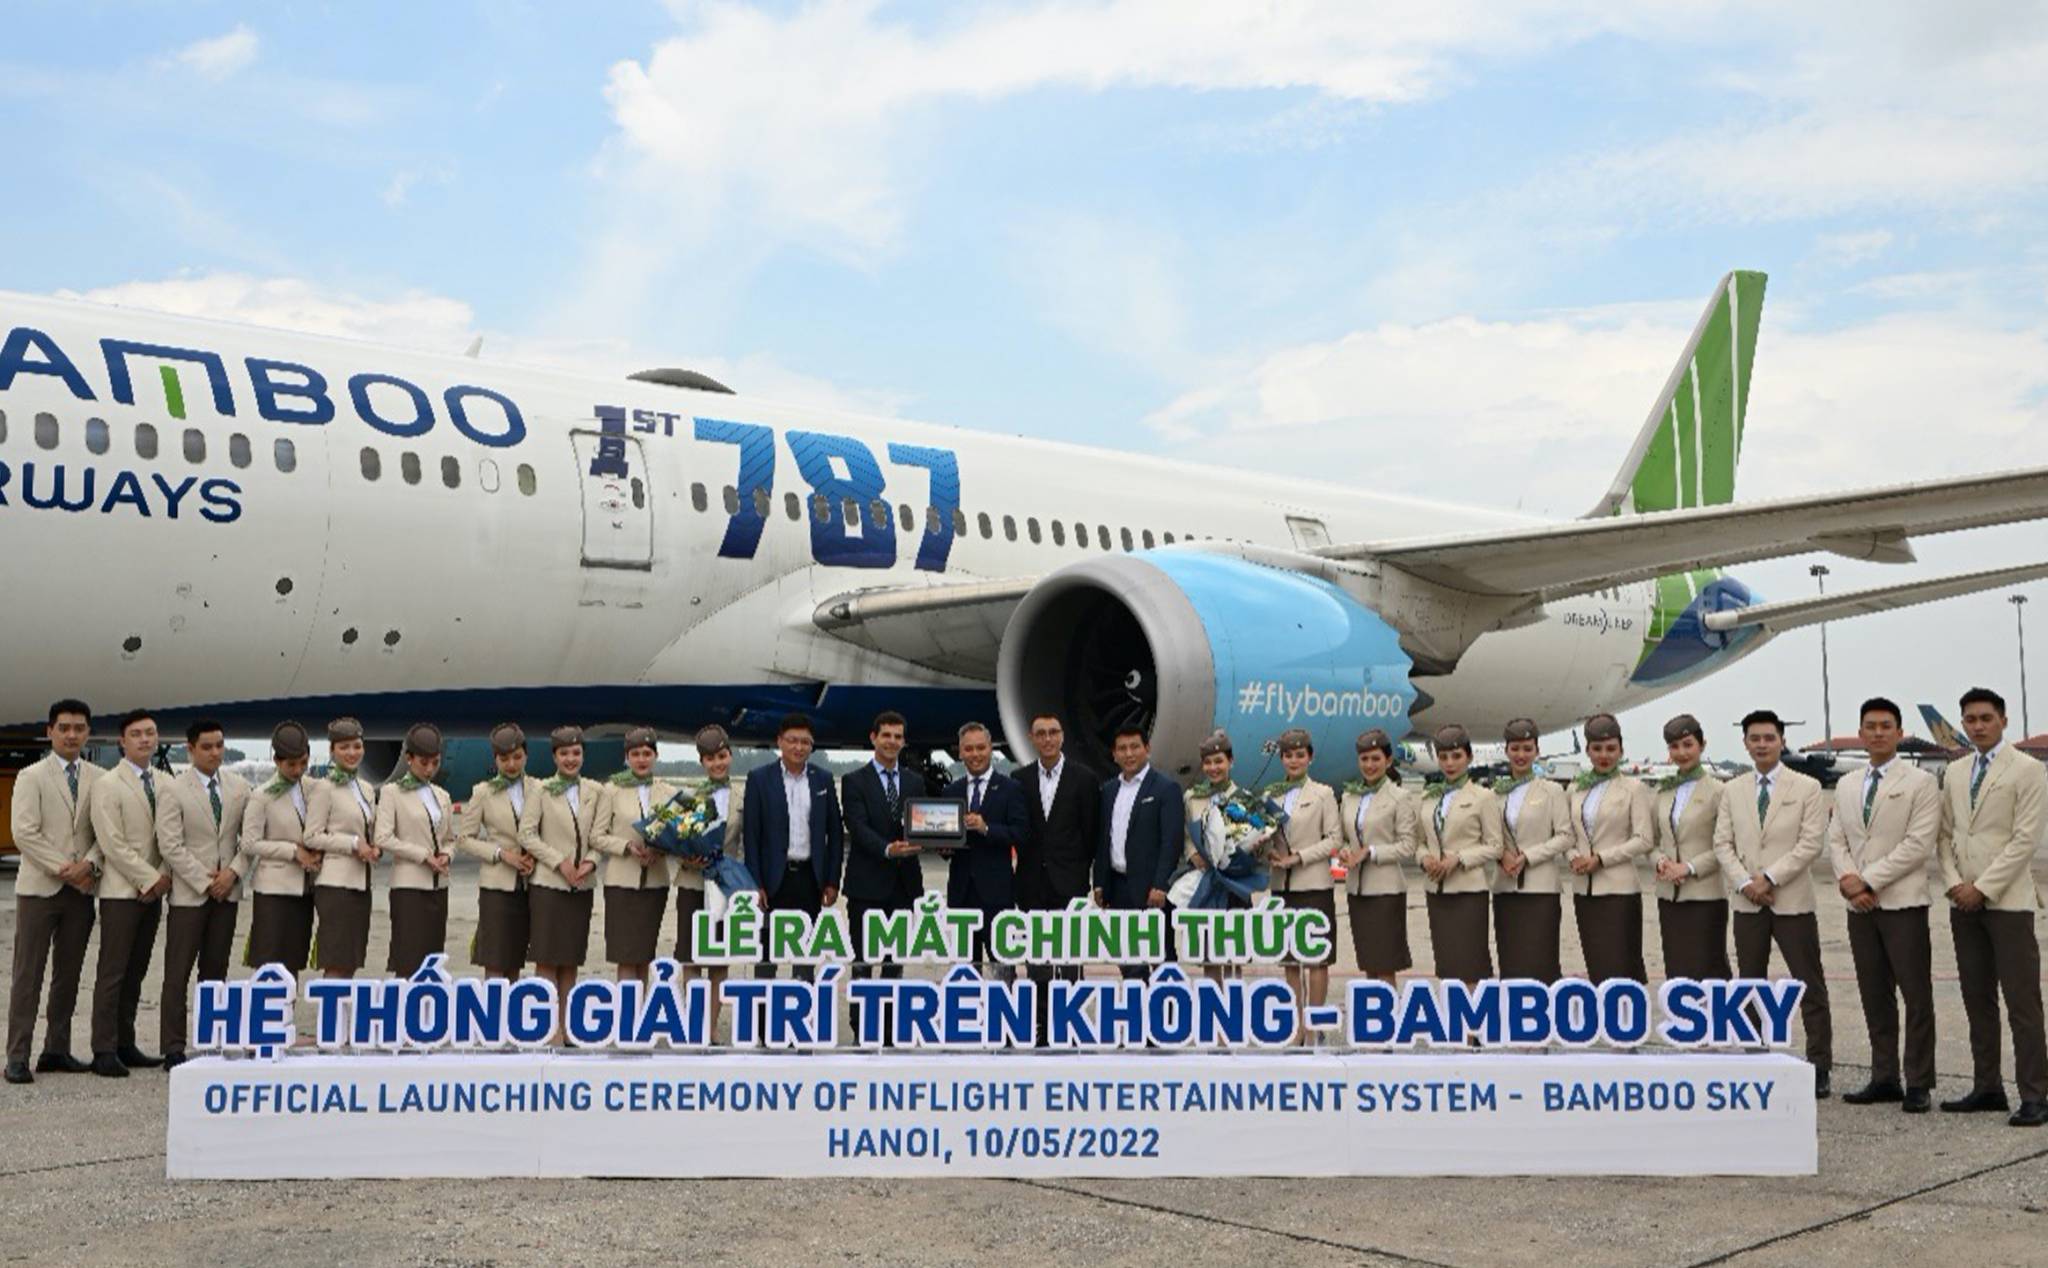 Bay trên 787-9 của Bamboo, anh em sẽ được xài màn hình giải trí chạy Android và Internet vệ tinh